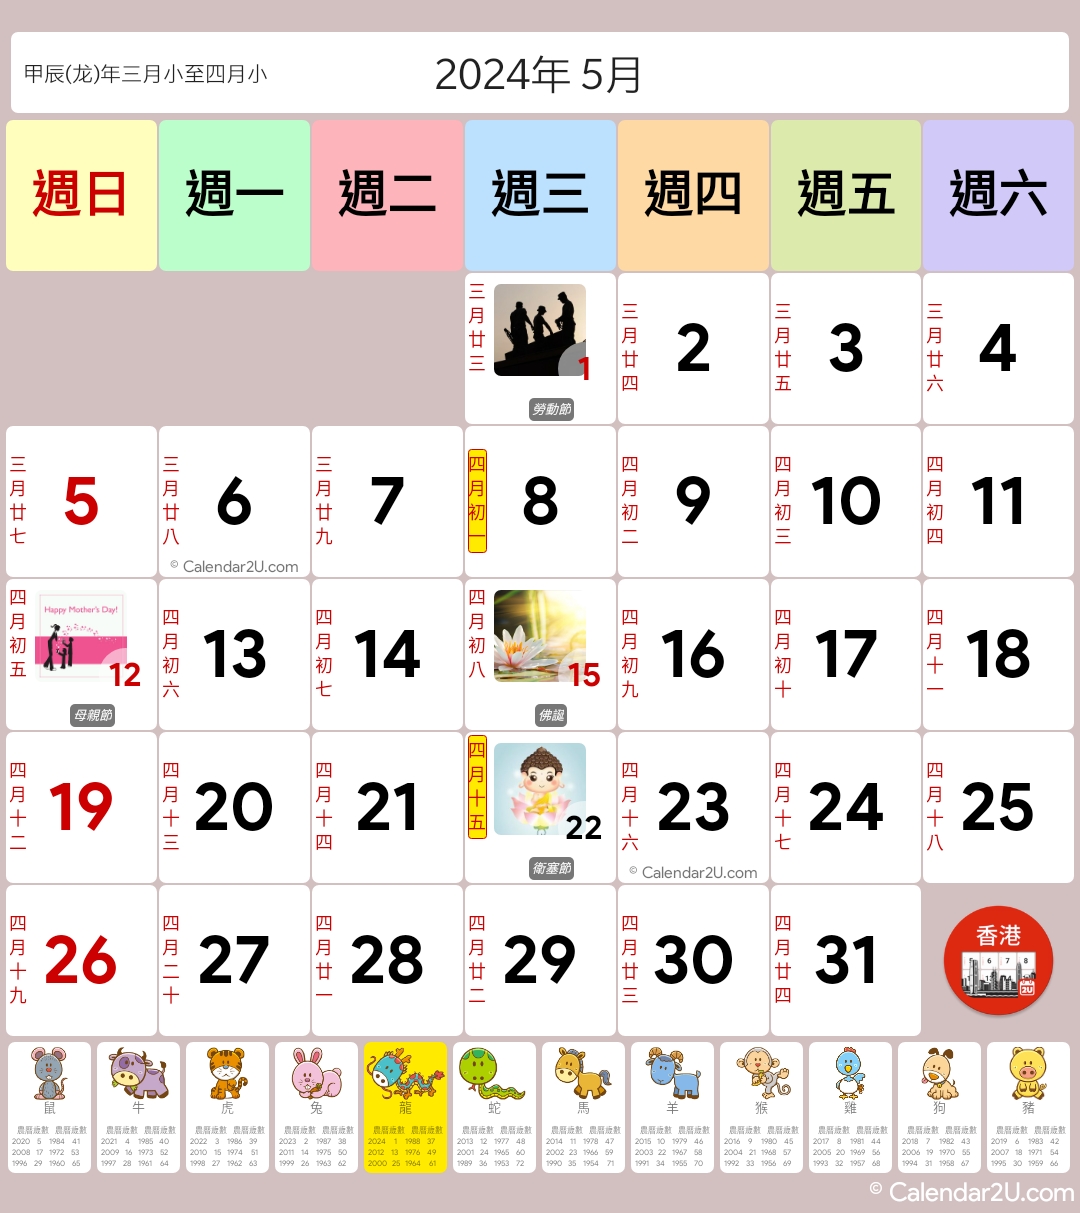 Hong Kong Calendar